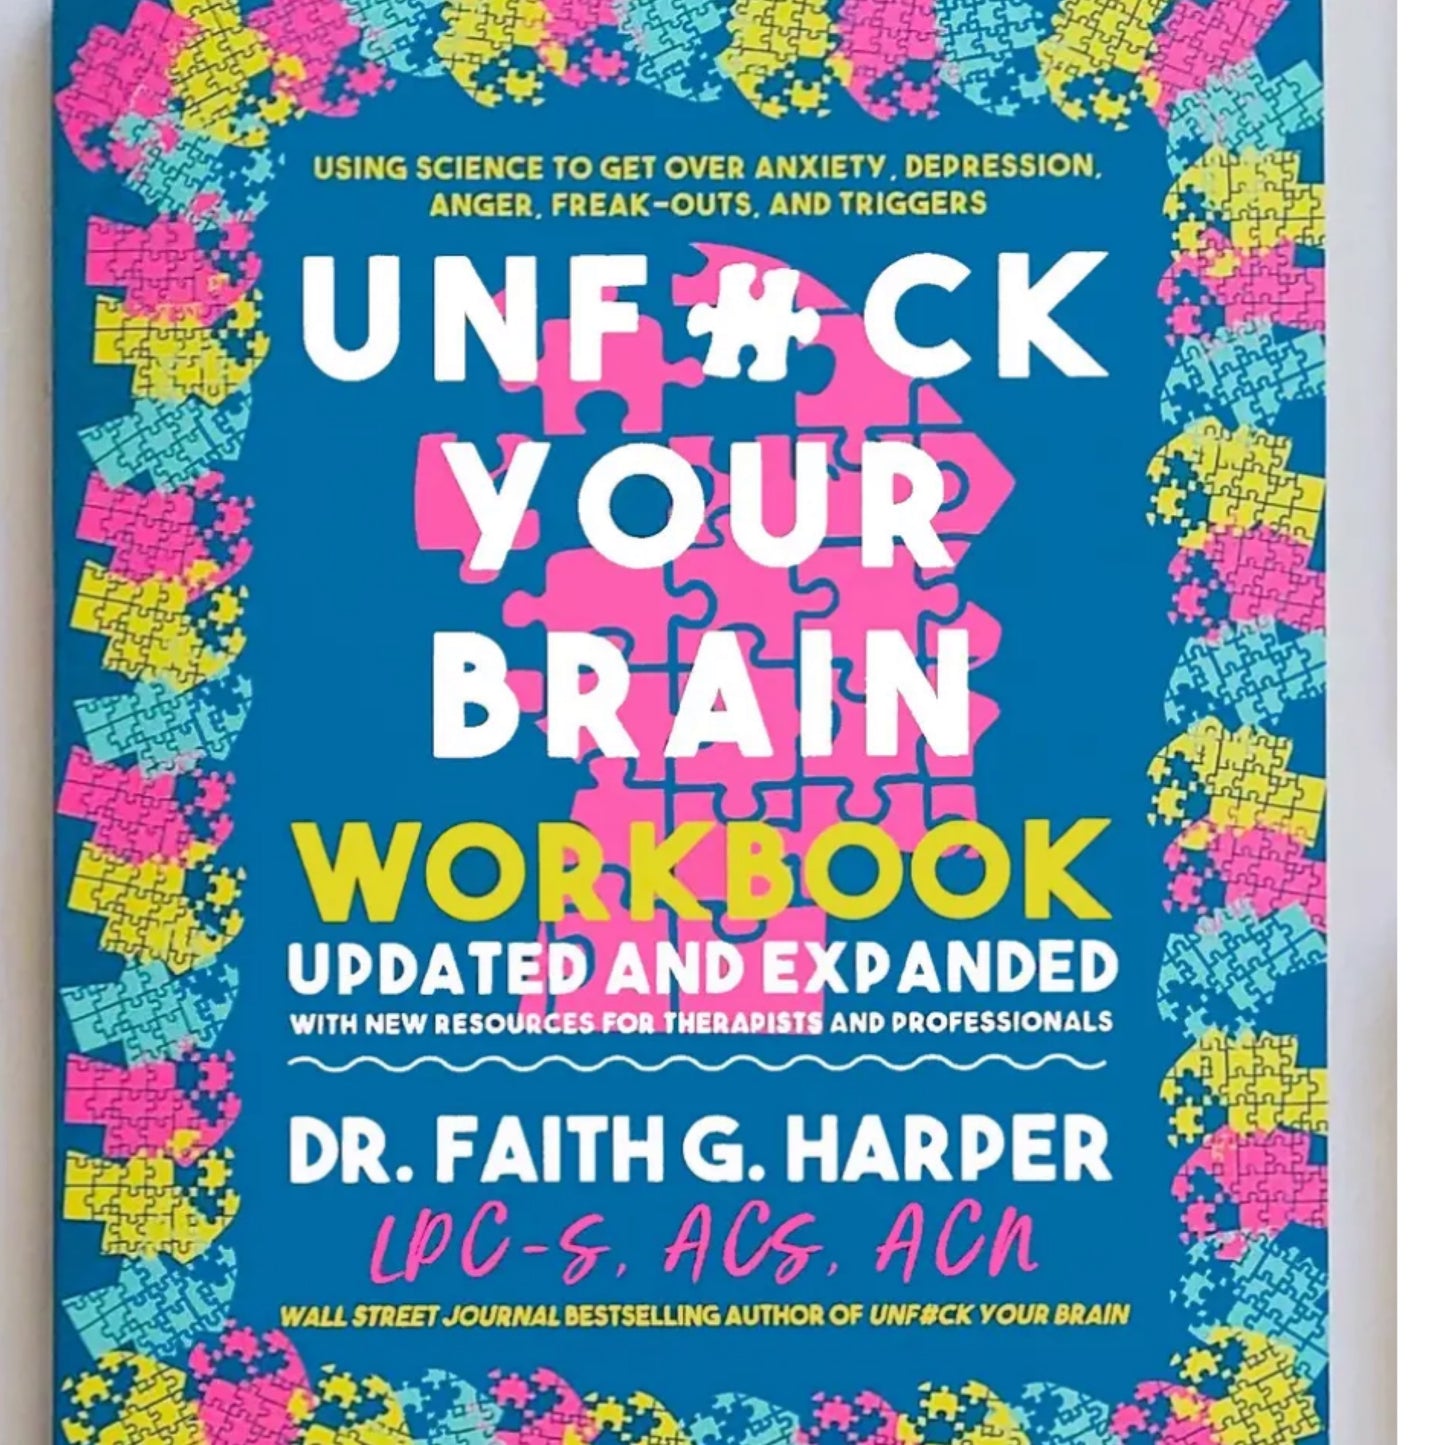 Unfuck your brain workbook